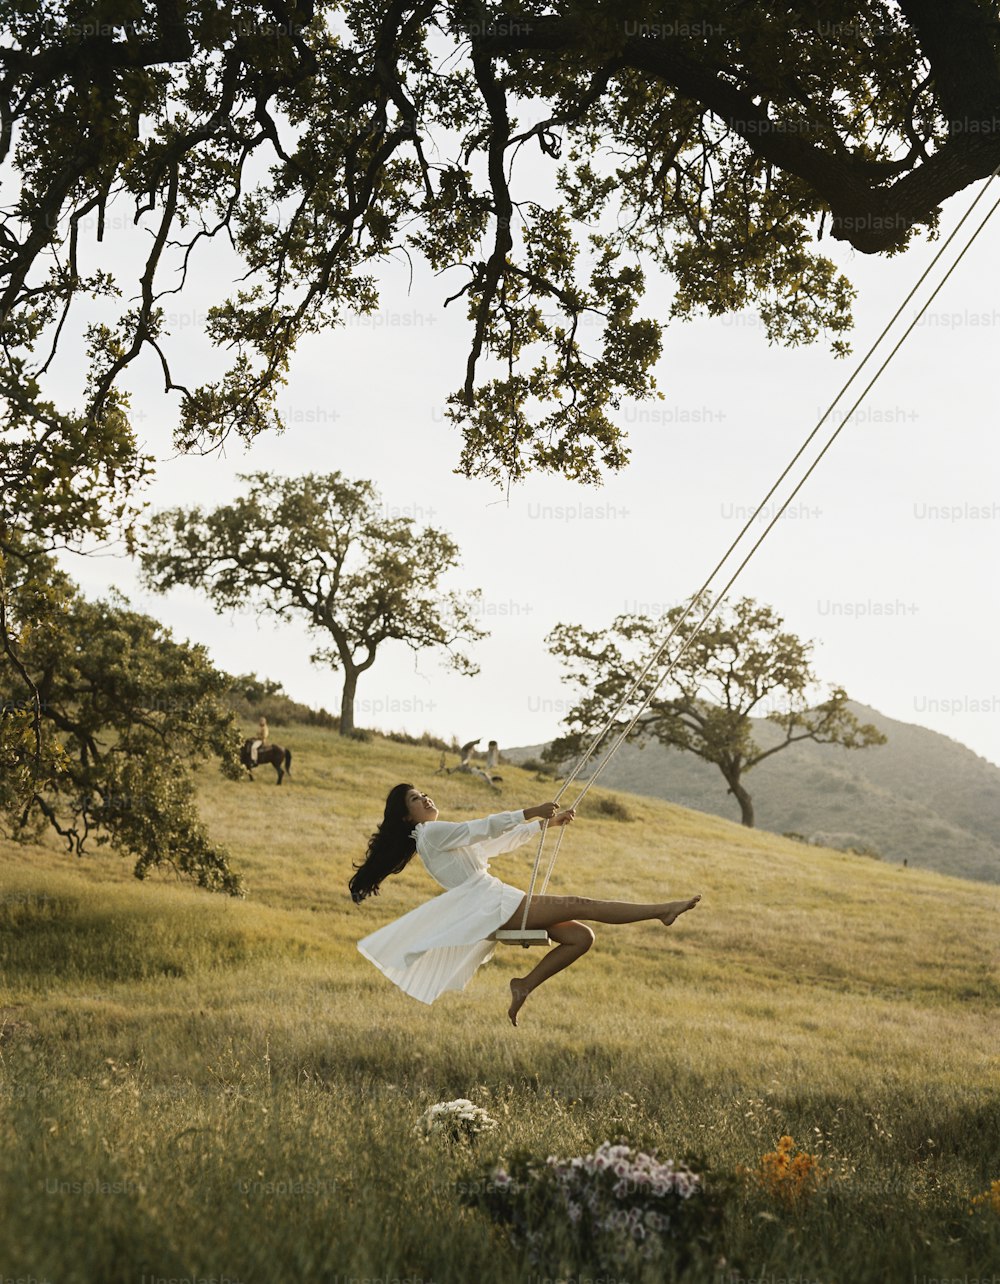 uma mulher voando pelo ar enquanto usava um vestido branco